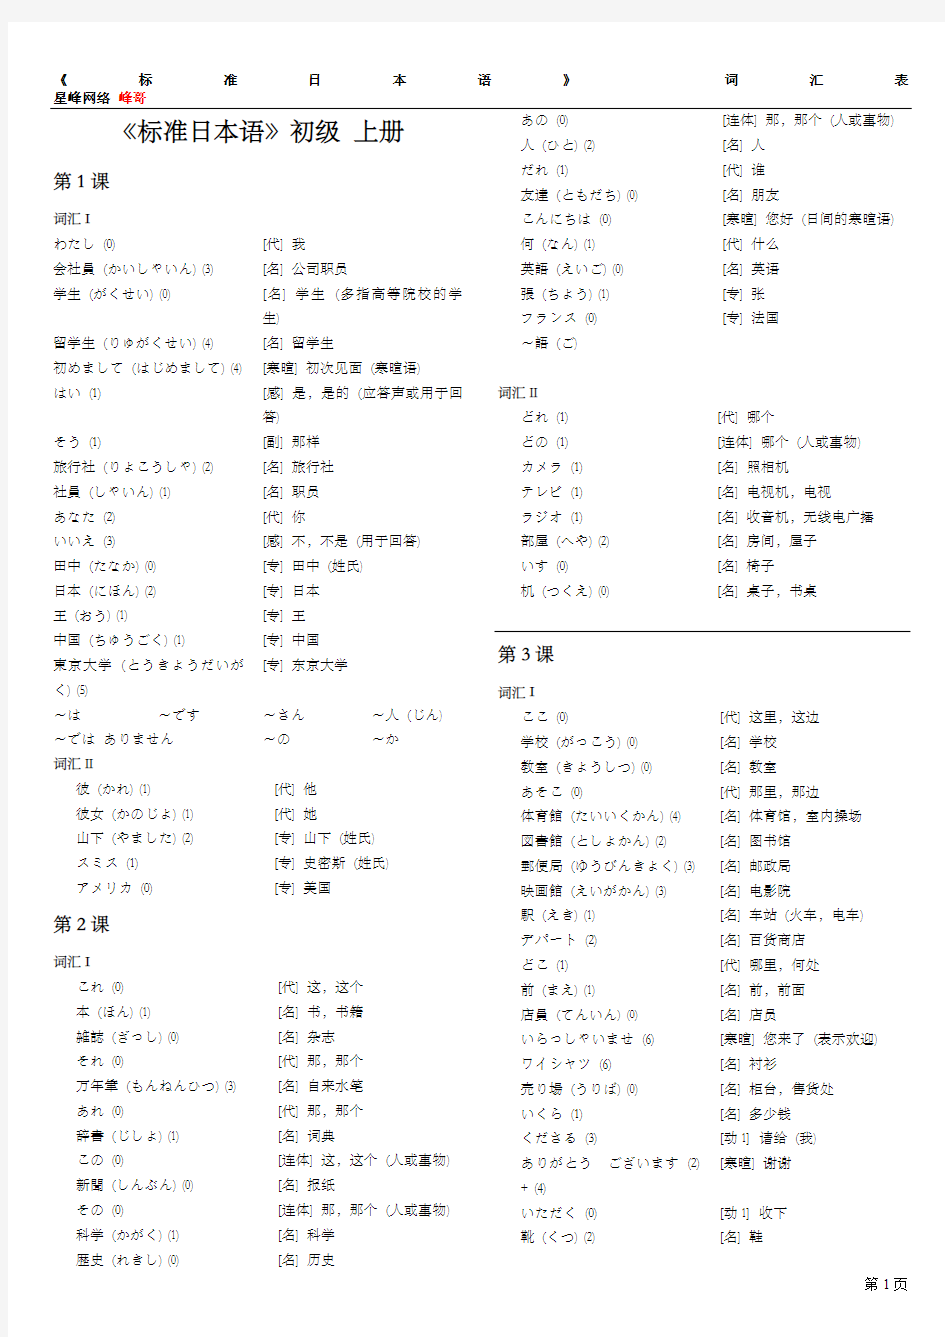 旧版《中日交流标准日本语-初级》词汇